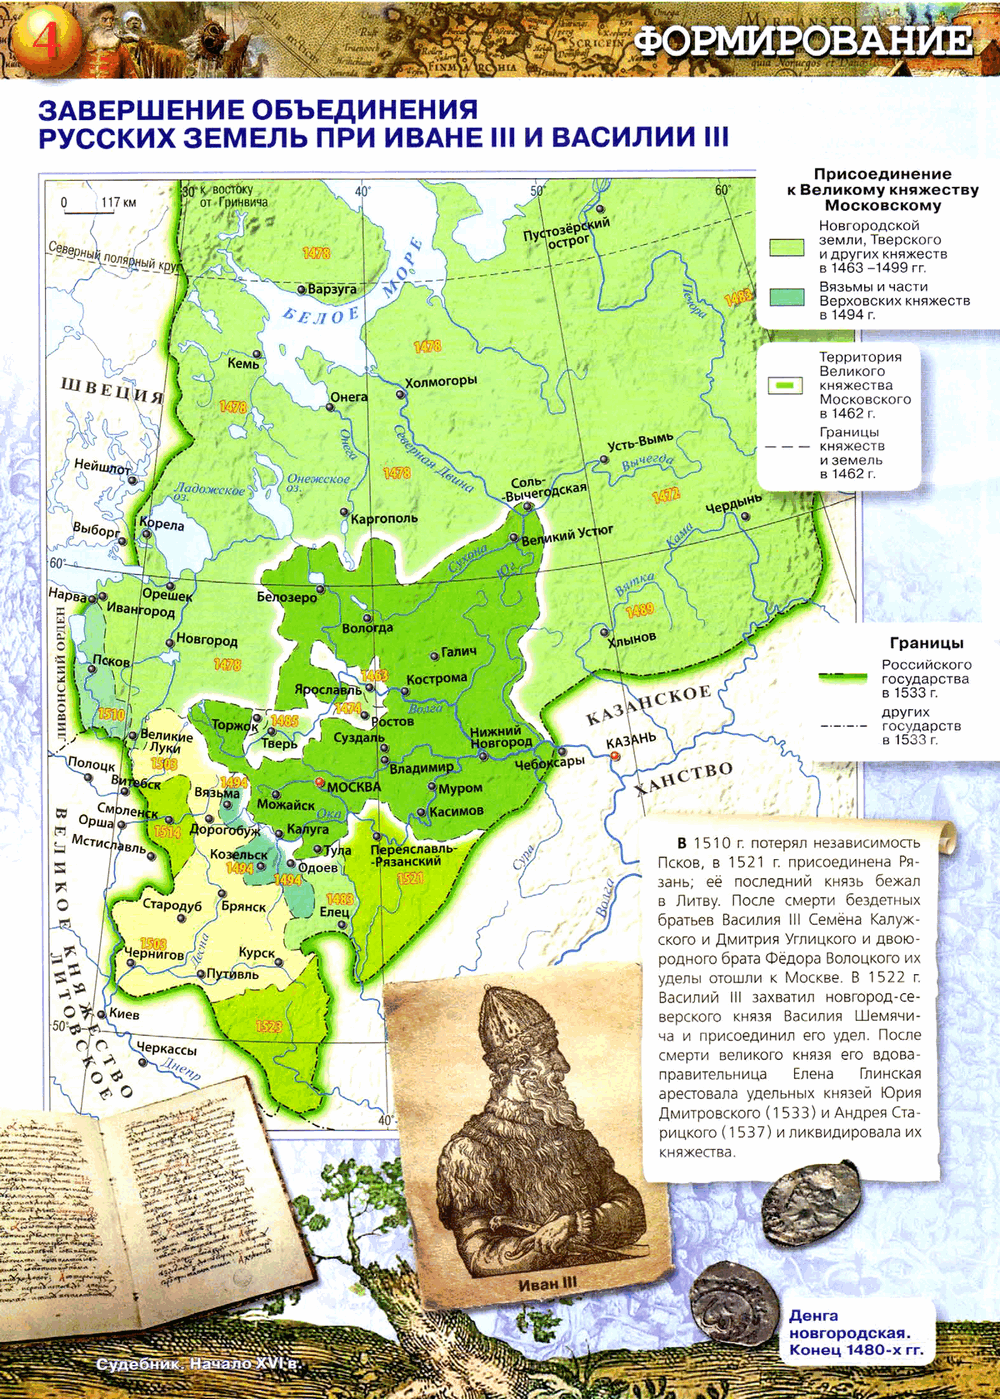 завершение объединения русских земель при Иване III